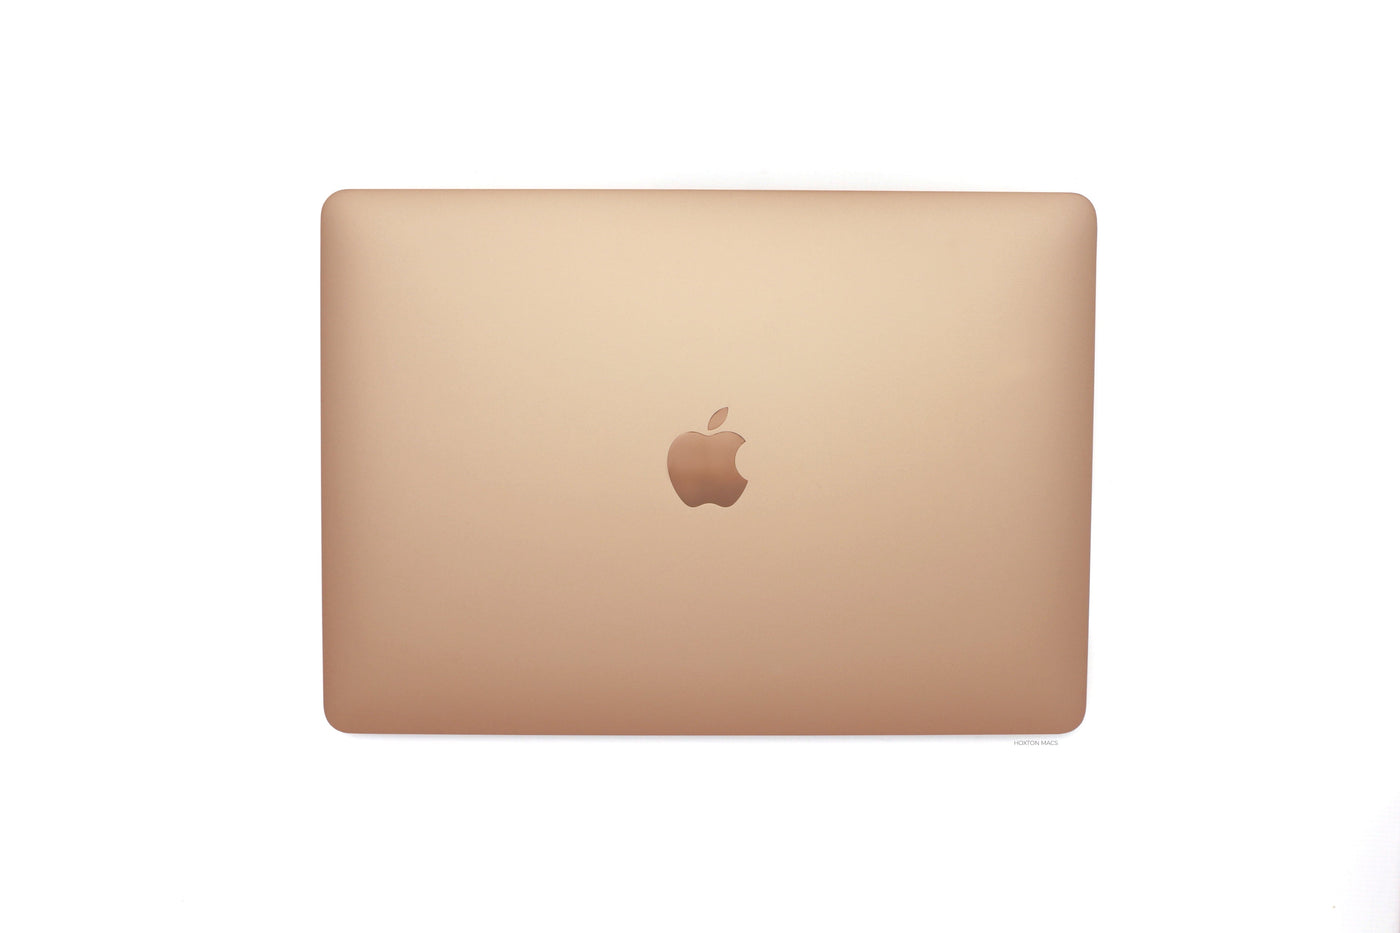 Apple MacBook Air 13-inch MacBook Air 13-inch Core i5 1.6GHz (Gold, 2019) - Fair